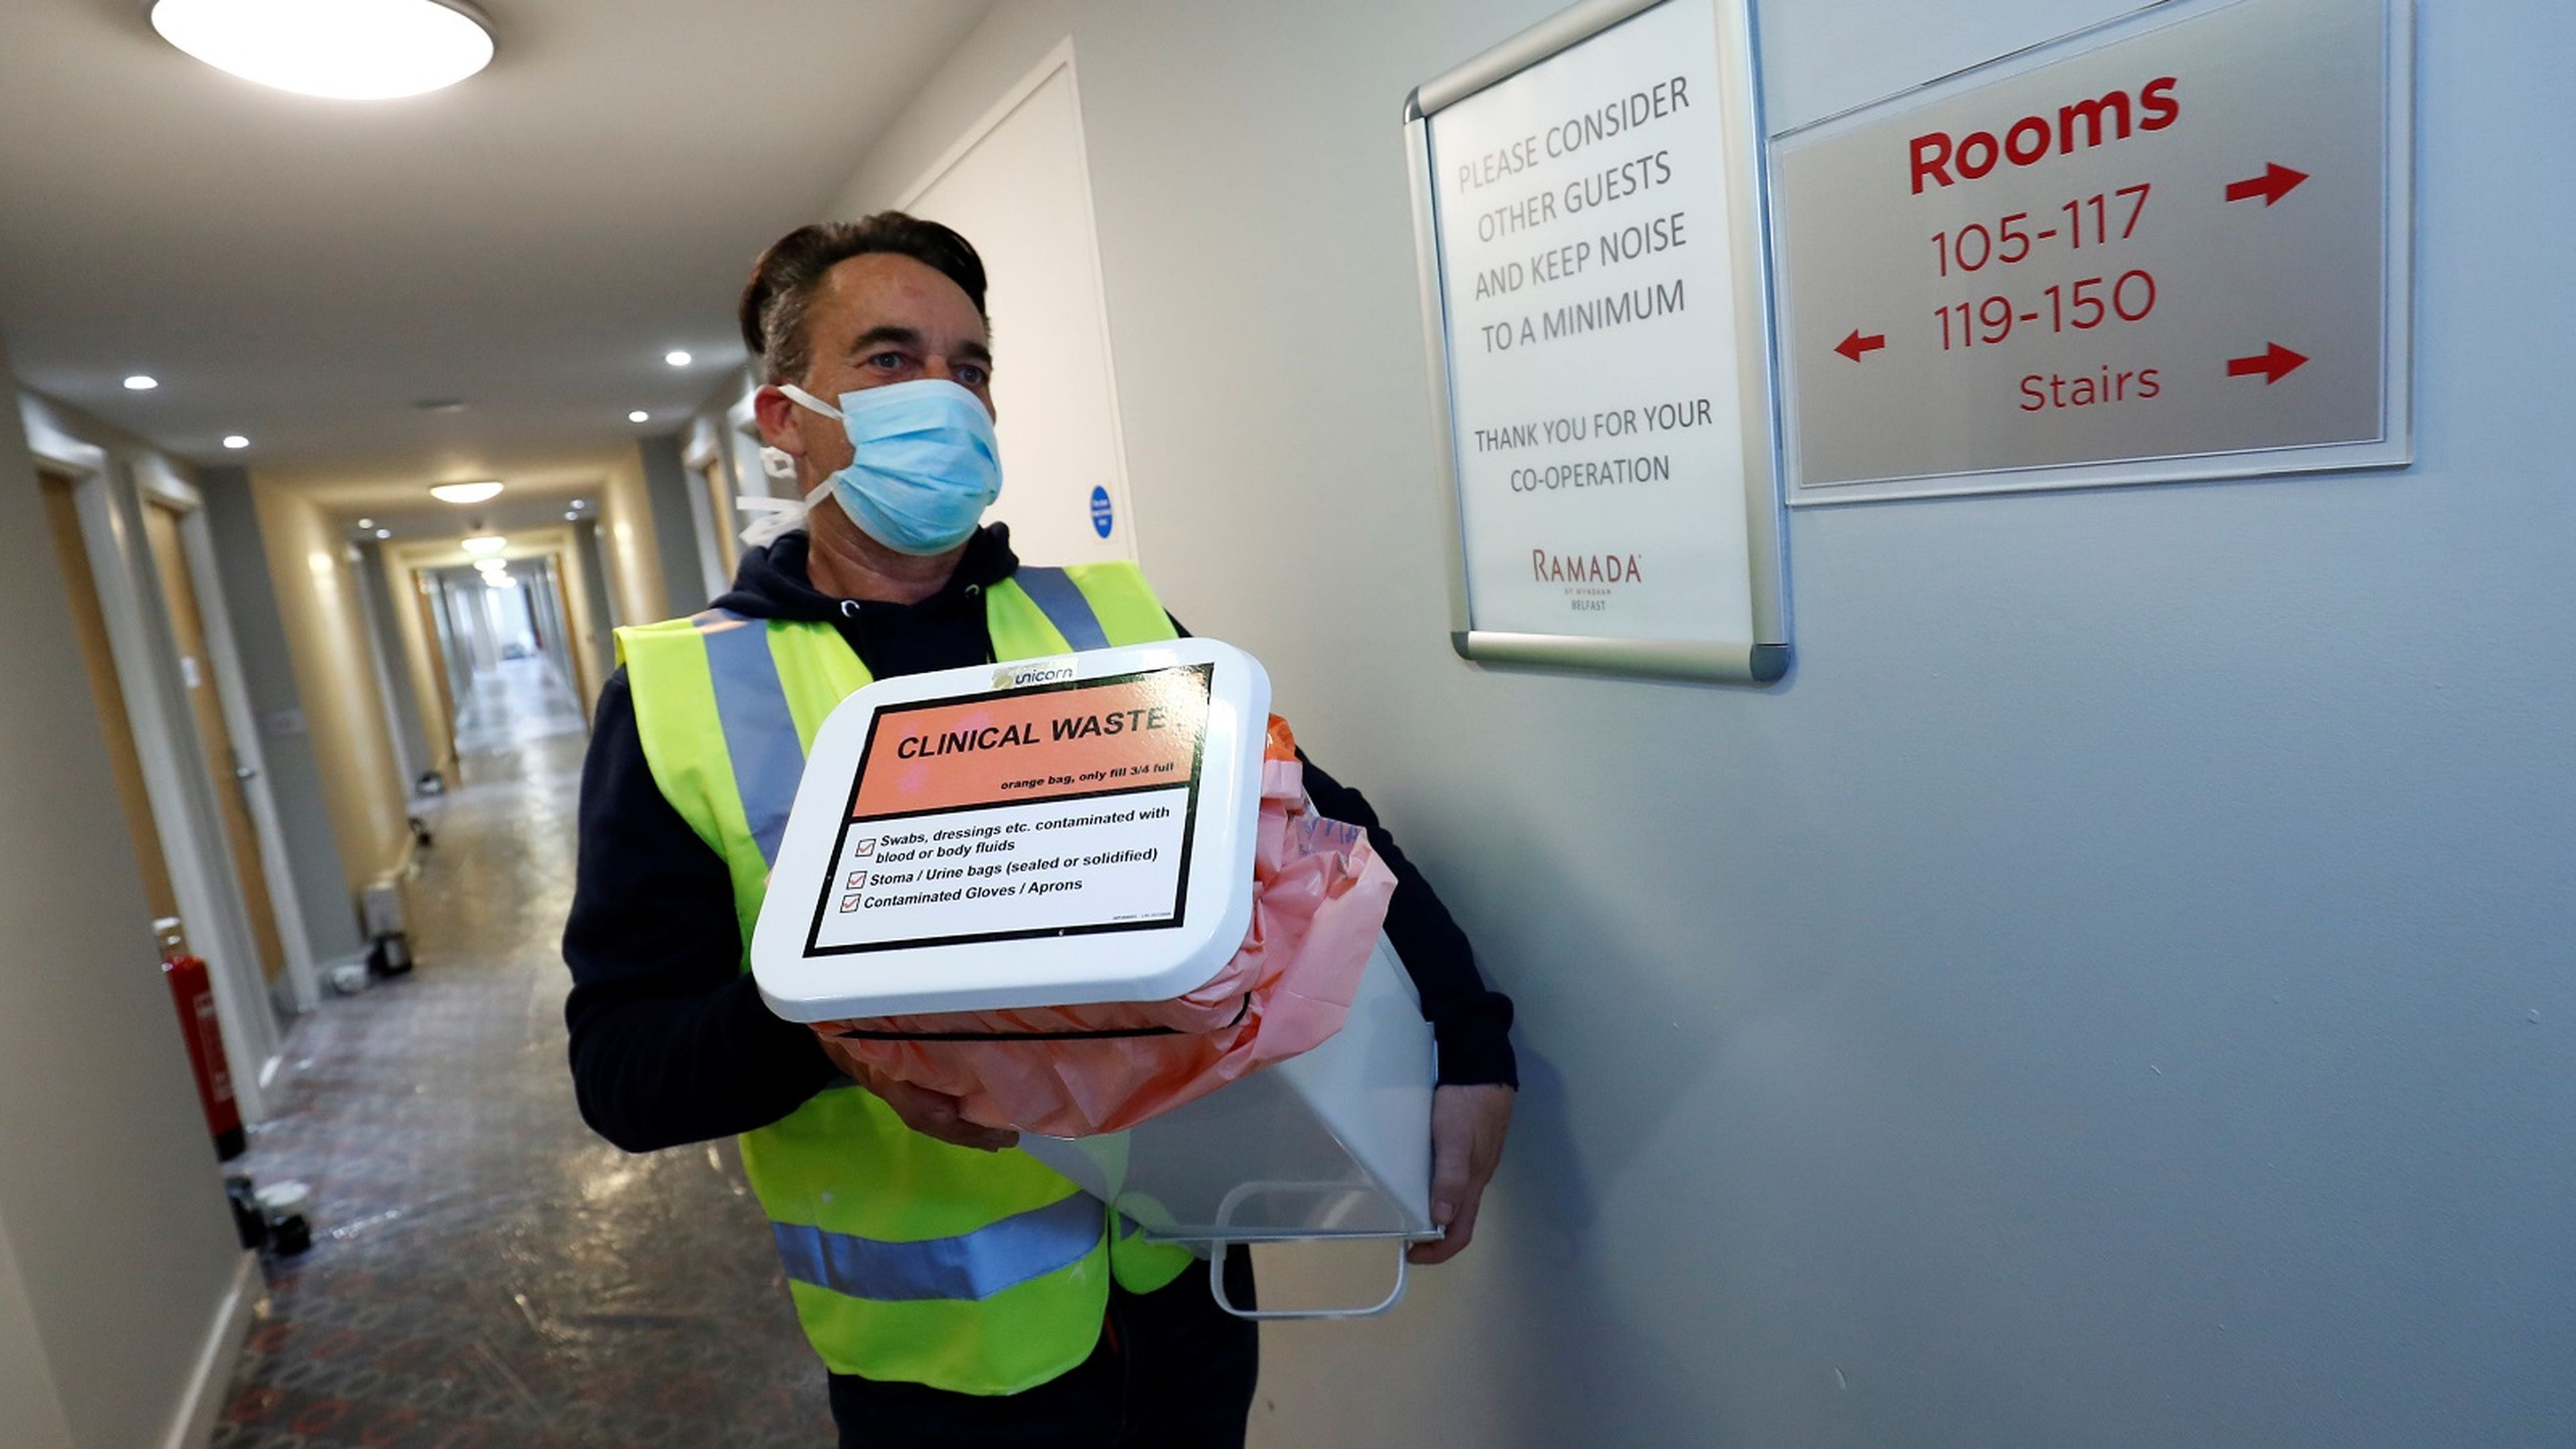 Un hombre con mascarilla lleva material sanitario en los pasillios de un hotel.